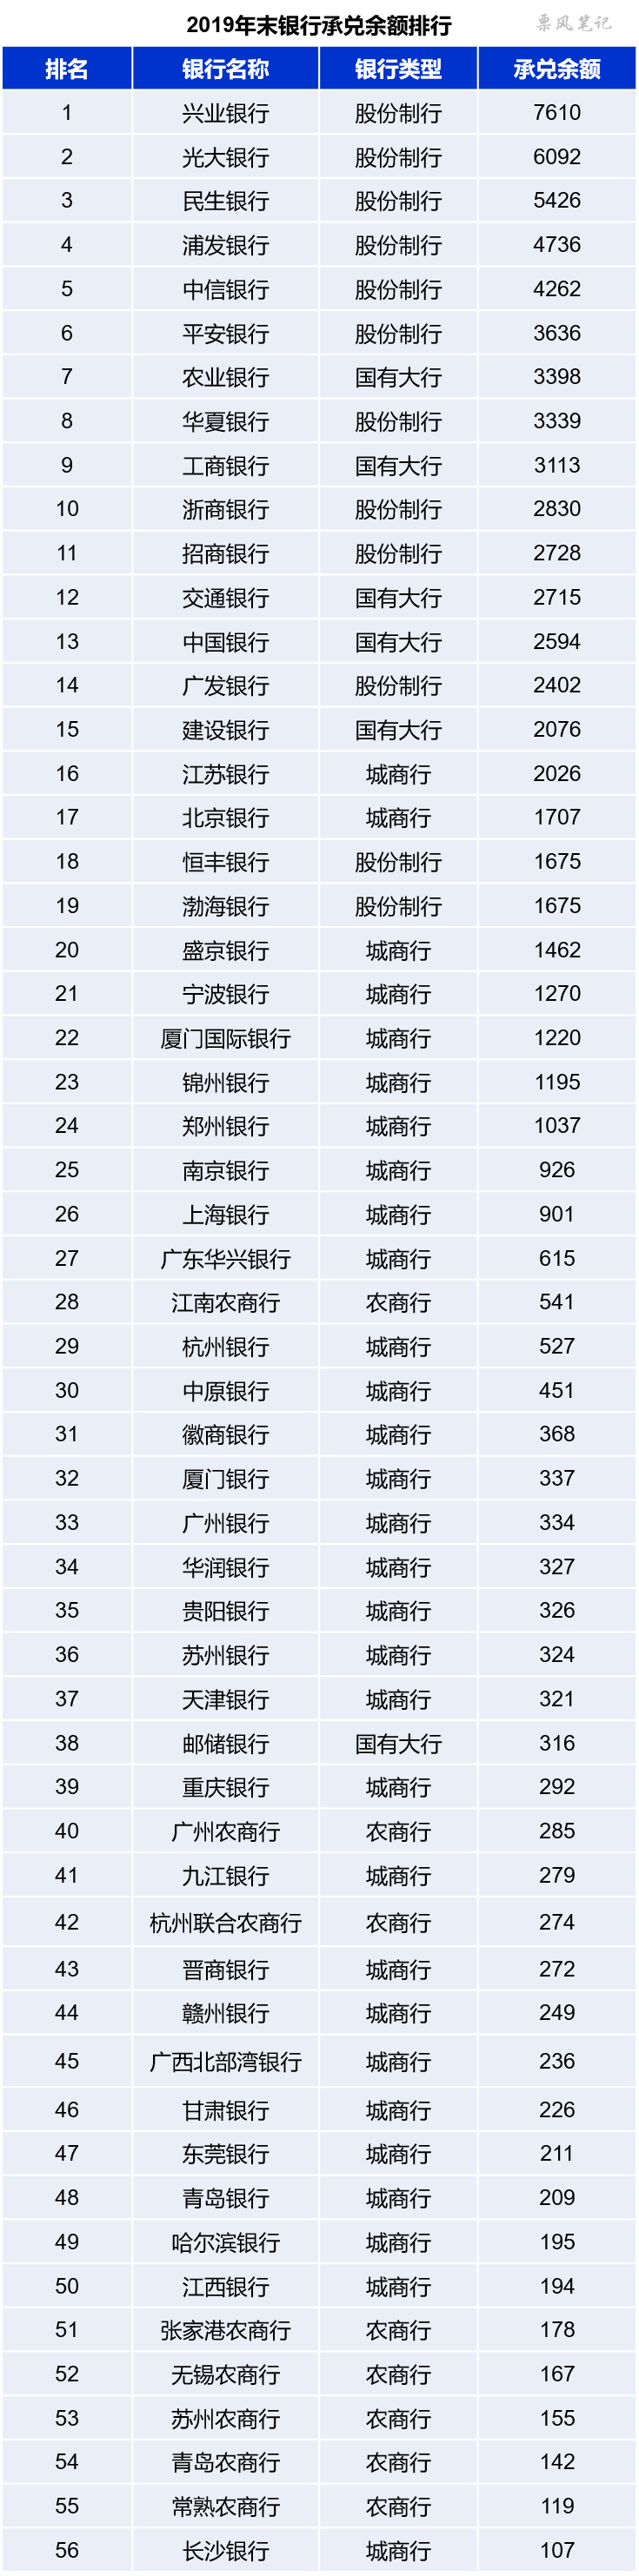 
千帆竞秀 2019年银行票据业务排行榜【lol押注官网】